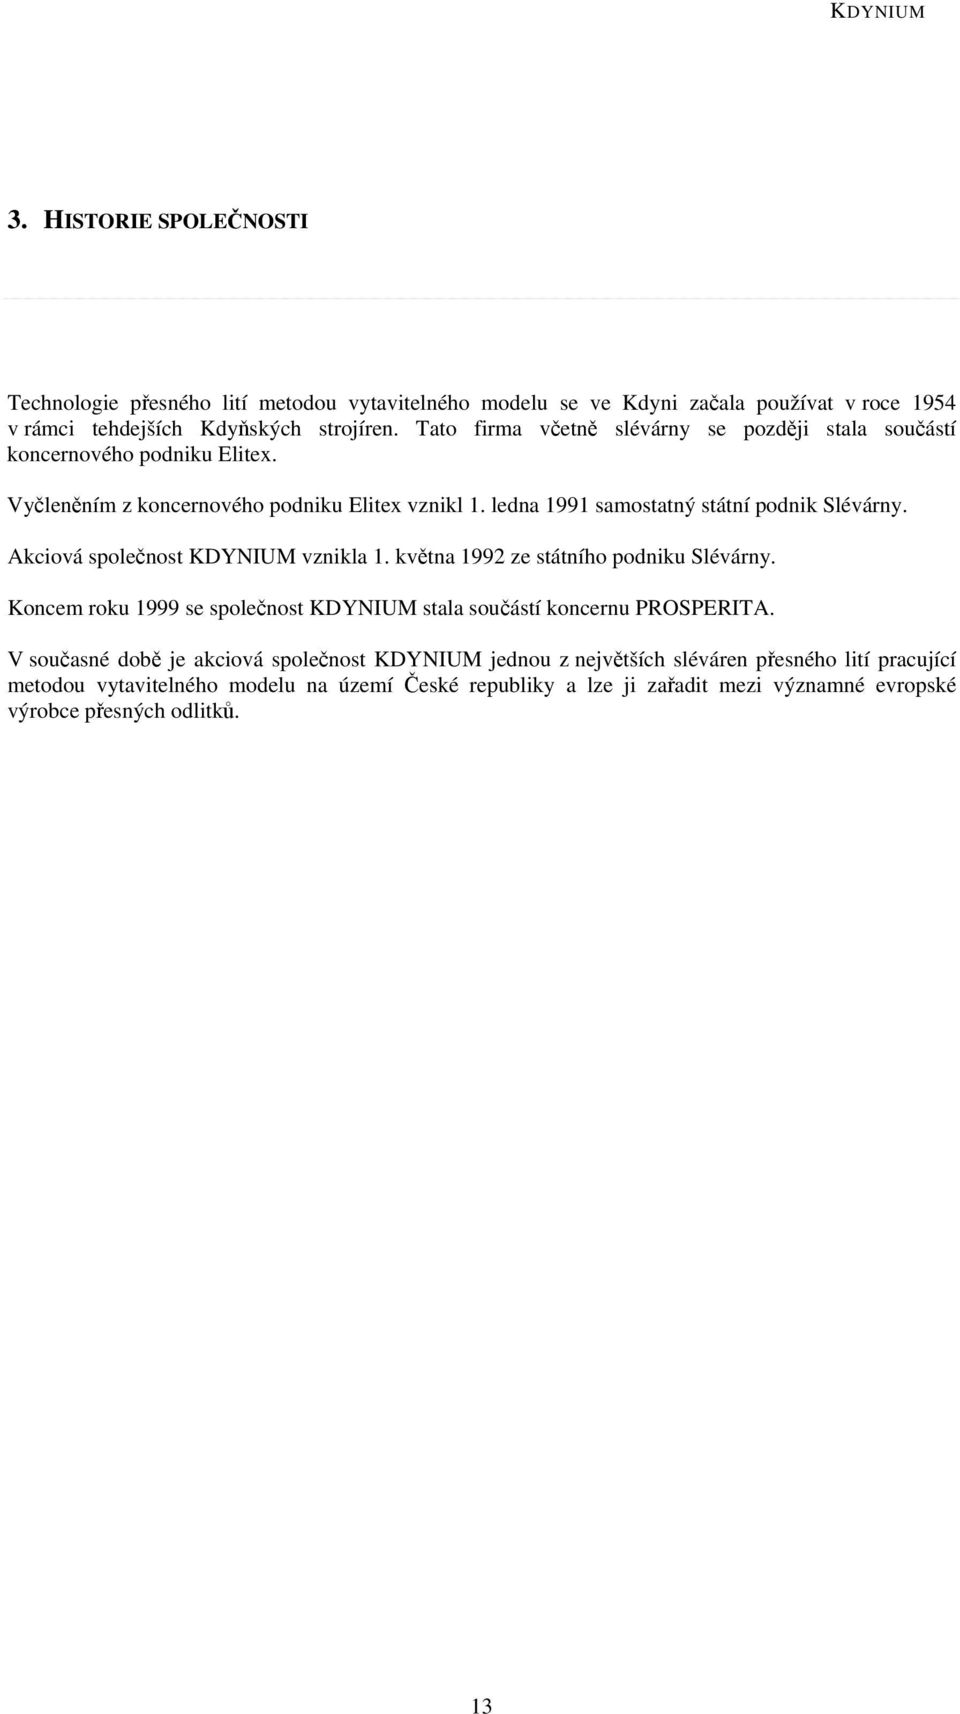 Akciová společnost KDYNIUM vznikla 1. května 1992 ze státního podniku Slévárny. Koncem roku 1999 se společnost KDYNIUM stala součástí koncernu PROSPERITA.